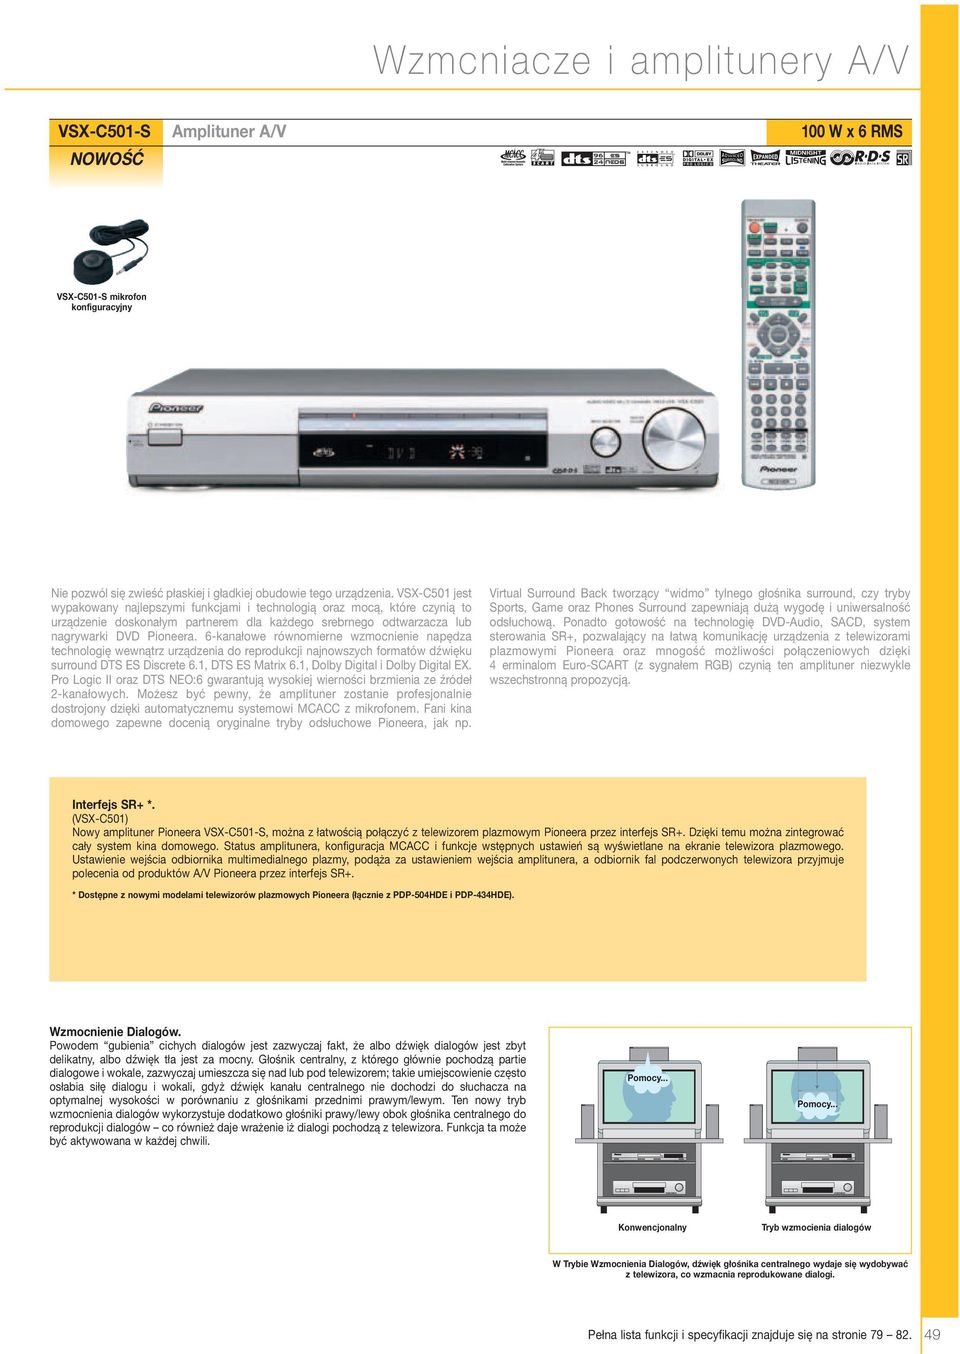 6-kanałowe równomierne wzmocnienie napędza technologię wewnątrz urządzenia do reprodukcji najnowszych formatów dźwięku surround DTS ES Discrete 6., DTS ES Matrix 6., Dolby Digital i Dolby Digital EX.